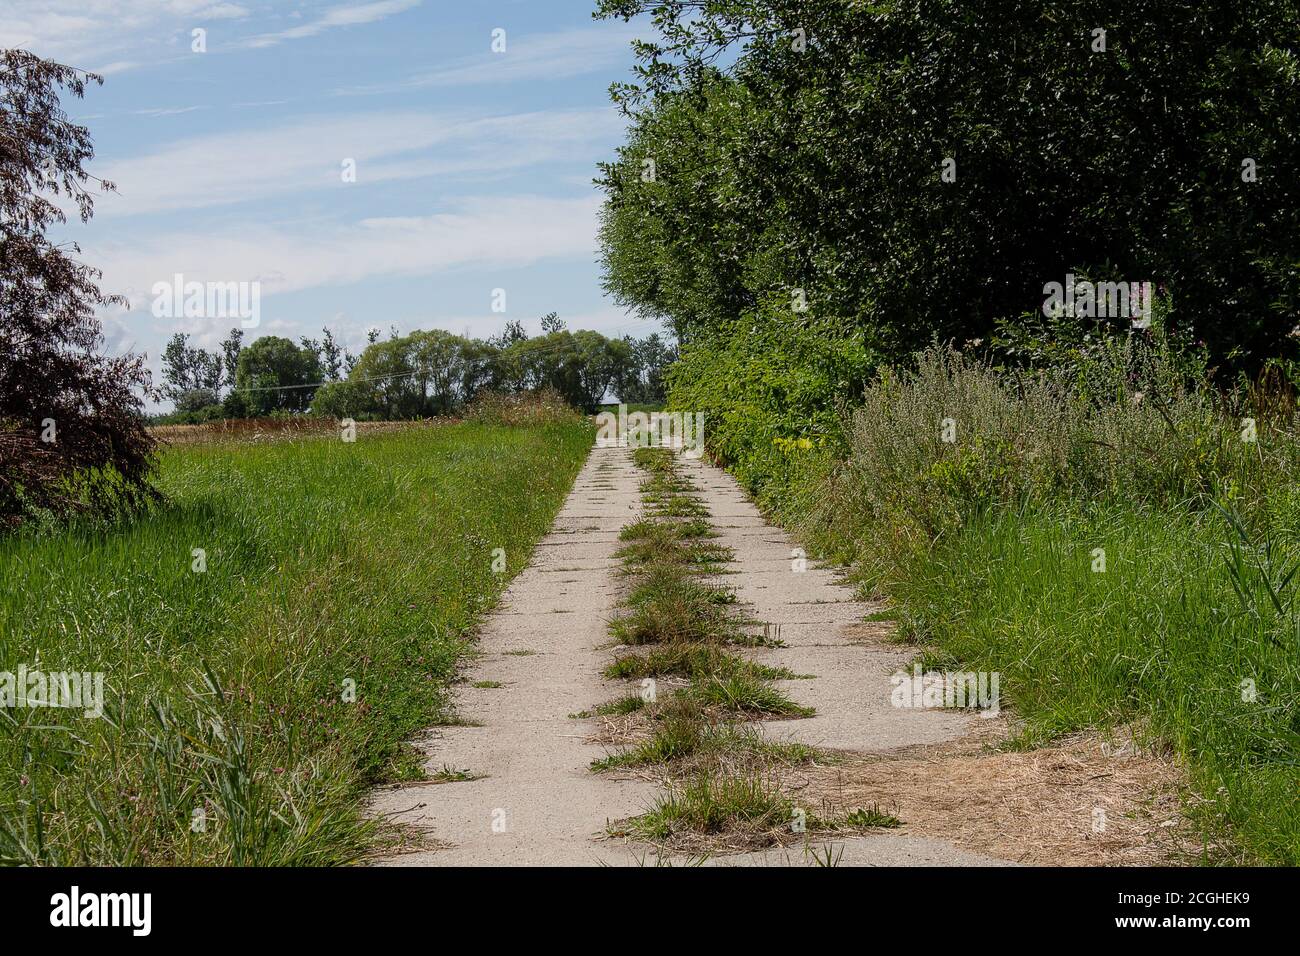 Route de terre inhabituelle avec des dalles de béton. Un champ sur la gauche, une forêt sur la droite. Banque D'Images